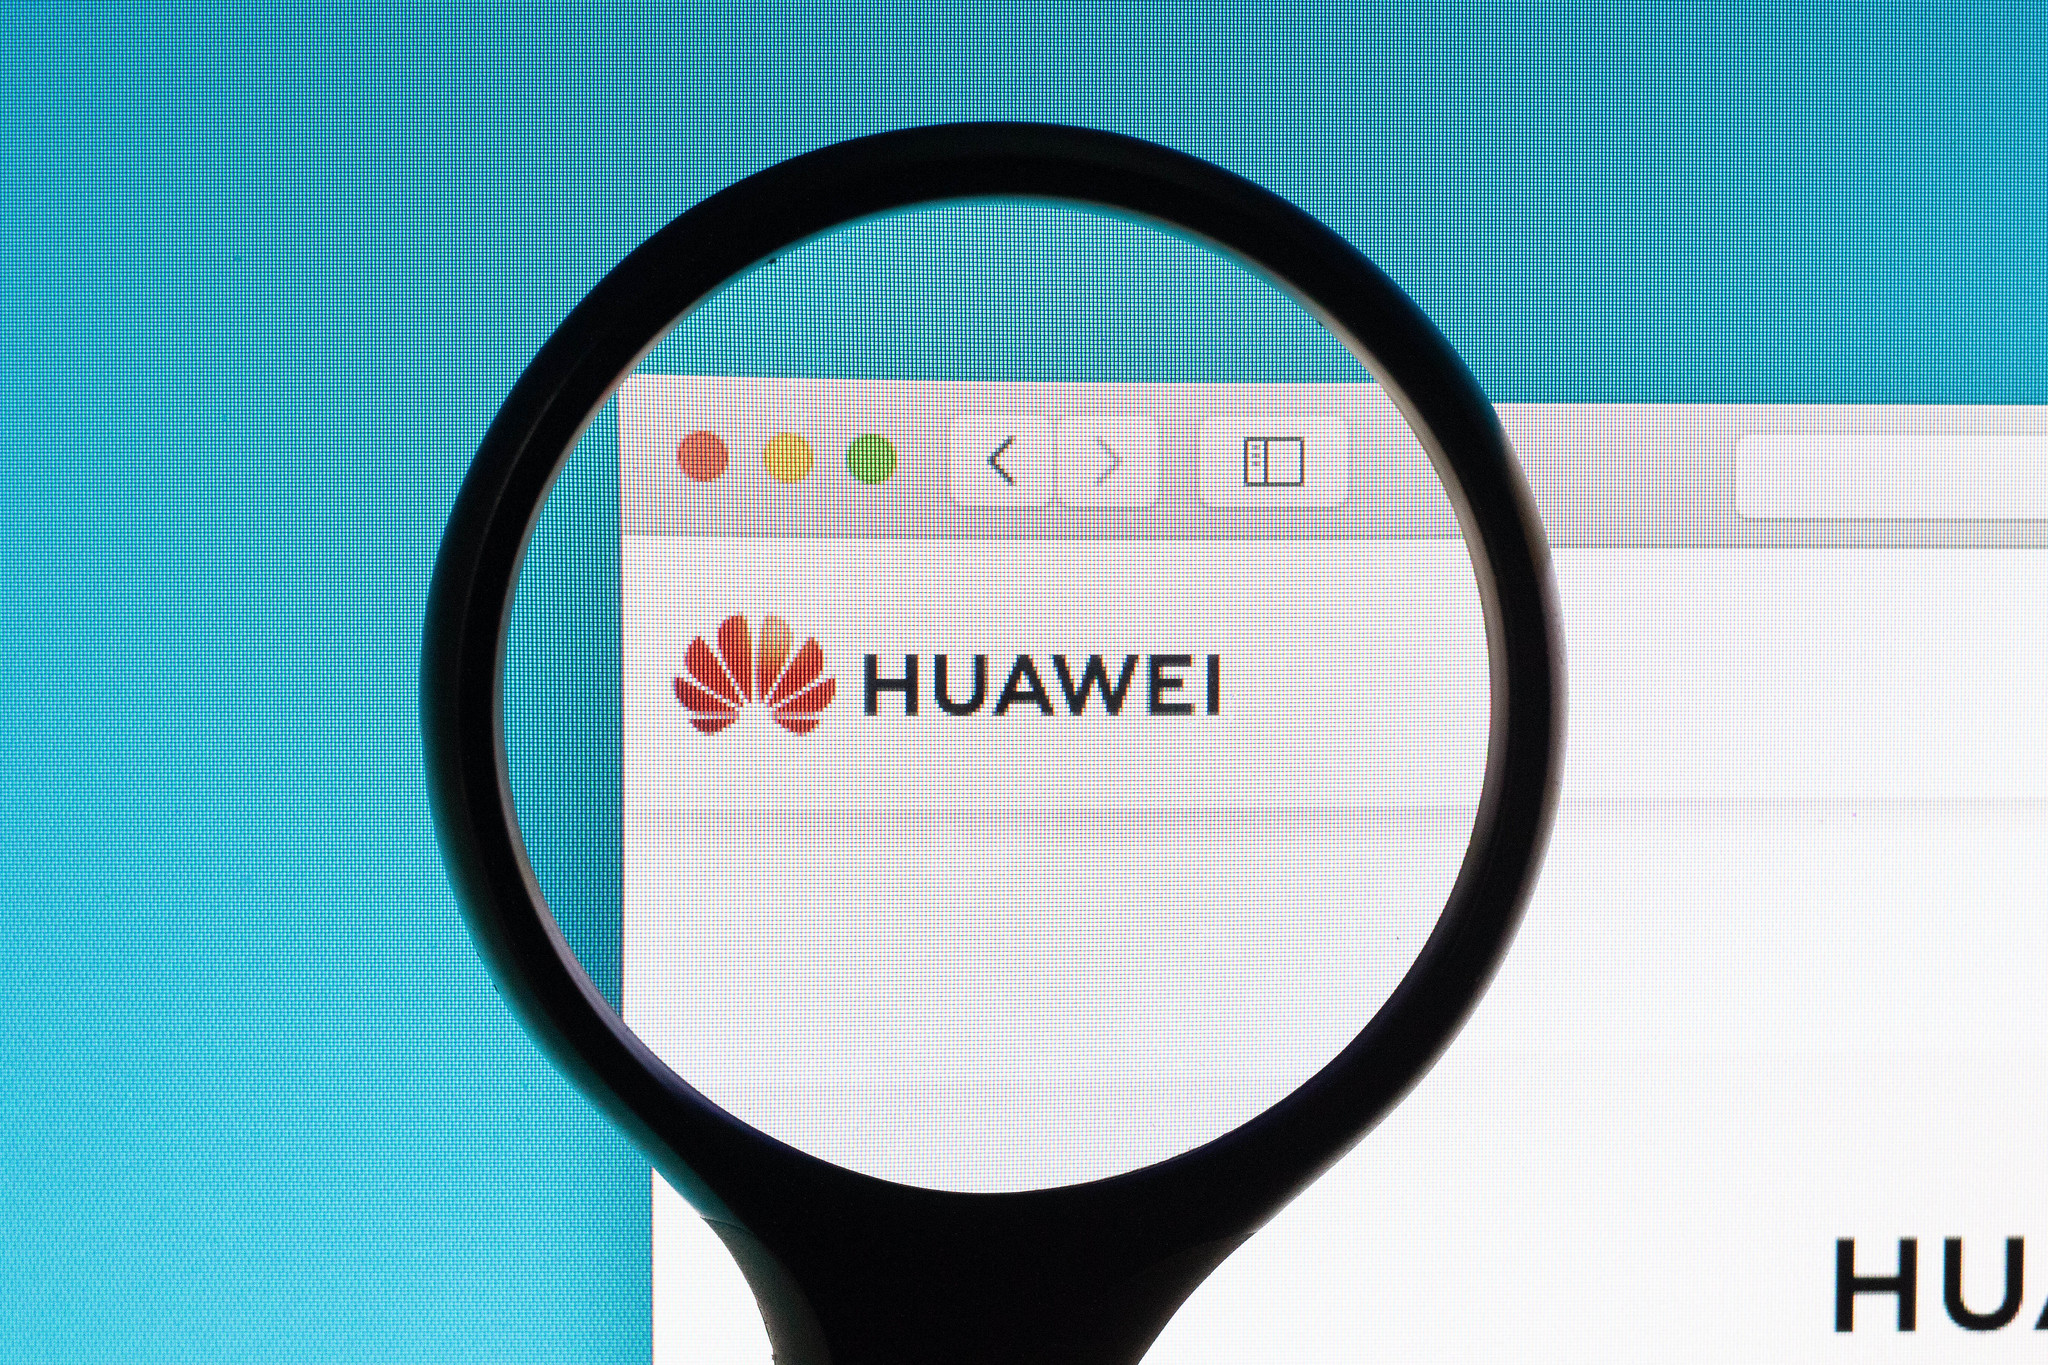 Come creare una cartella nascosta su Huawei